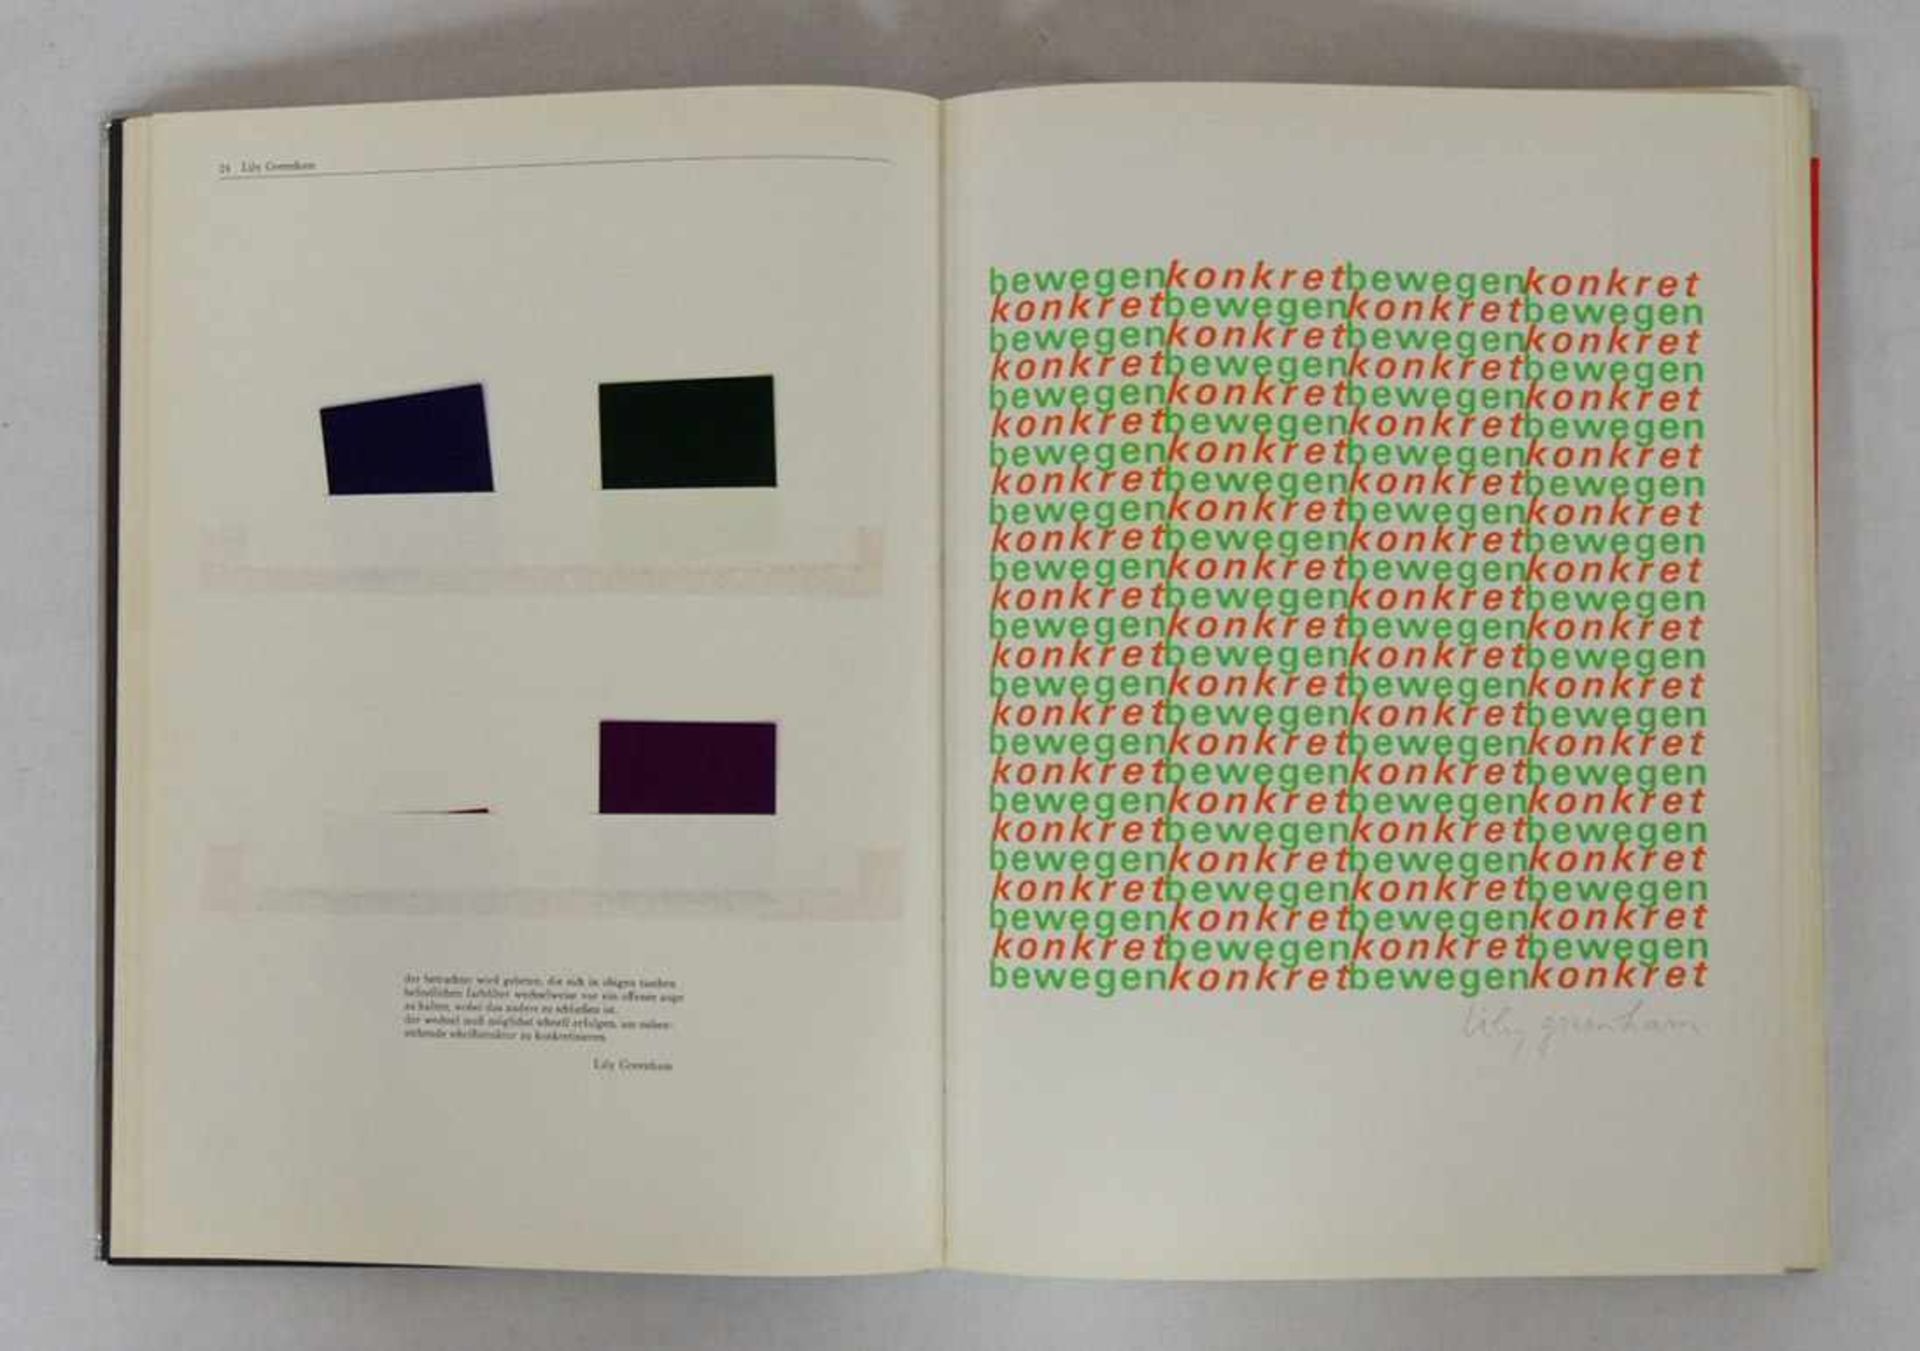 BRENNER, JürgenFühr 4 für vier6 Farbserigraphien, Stuttgart 1969, Ex 57/80 - Image 2 of 2